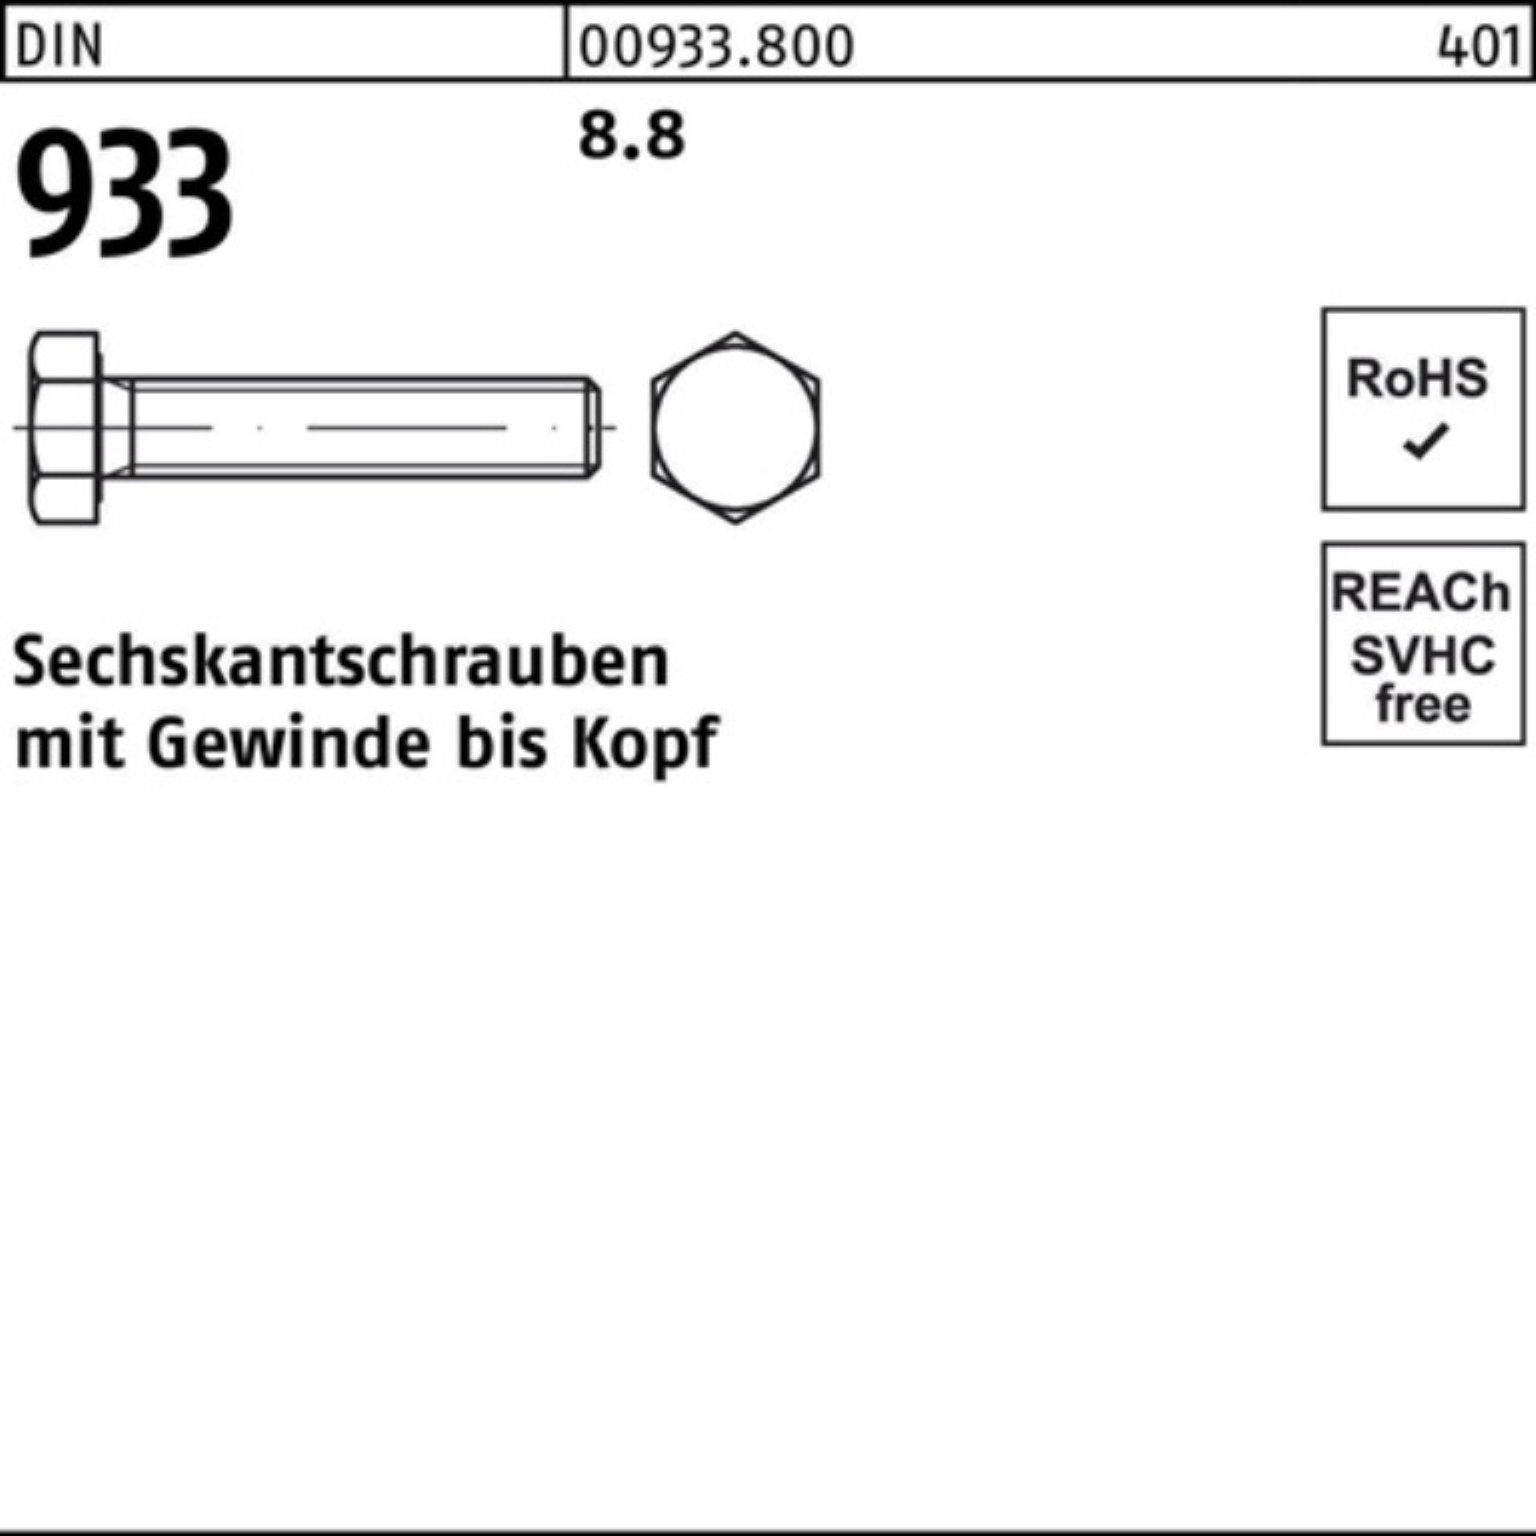 Reyher Sechskantschraube 100er Pack Sechskantschraube DIN 110 933 DIN Stück M22x VG 8.8 10 933